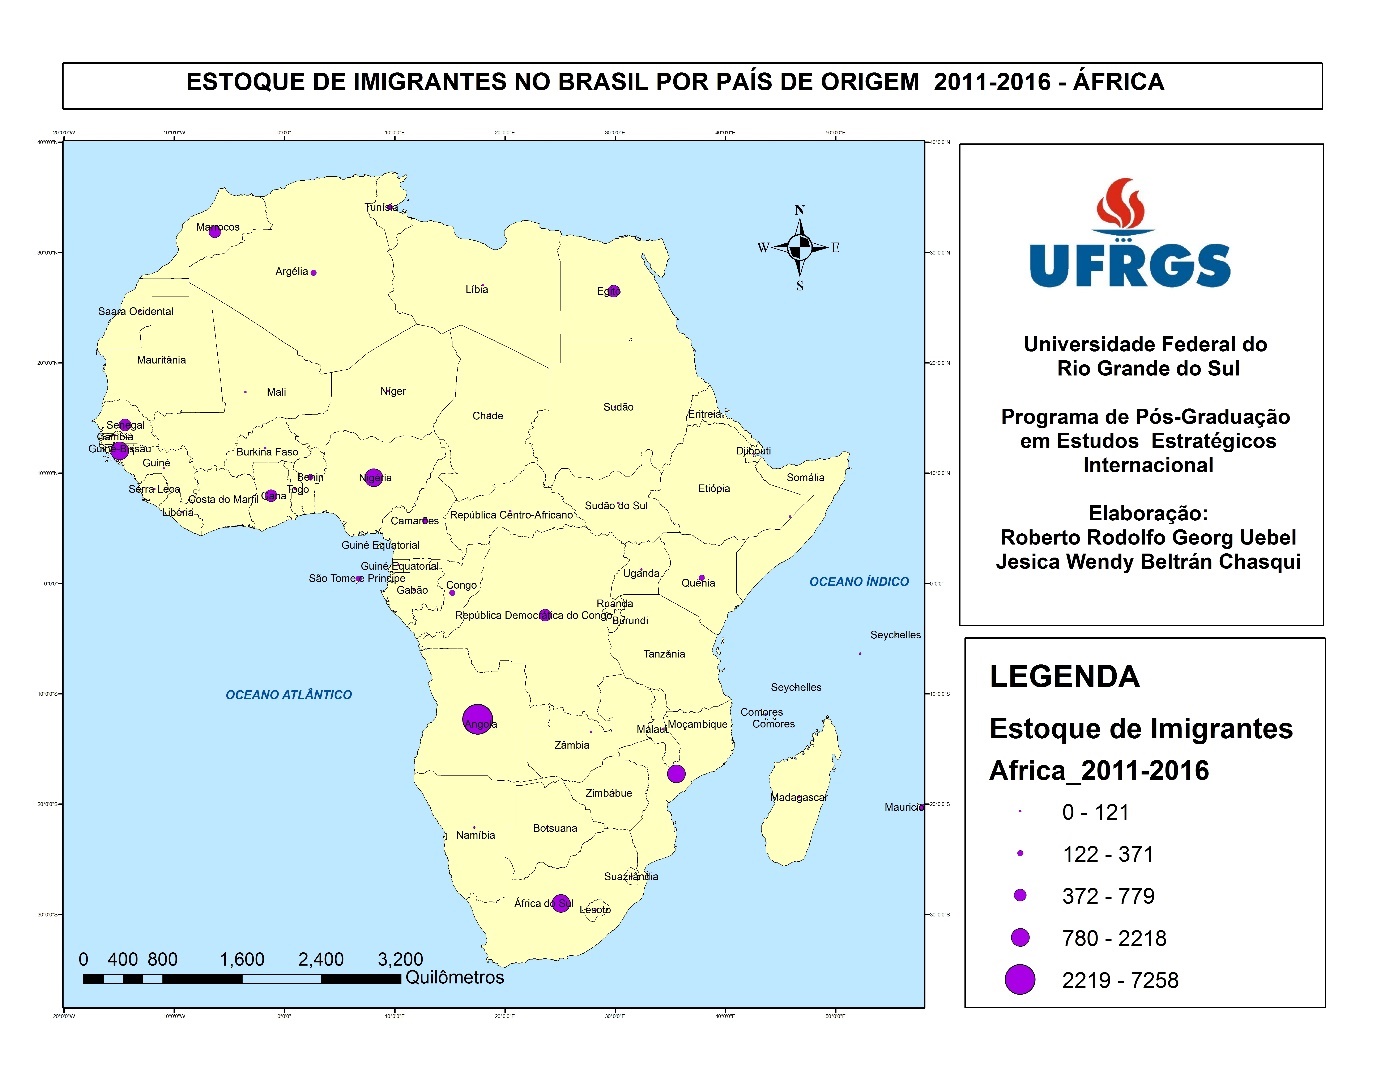 Mapa Estoque de imigrantes no
Brasil por país de origem, 2011/2016 - África